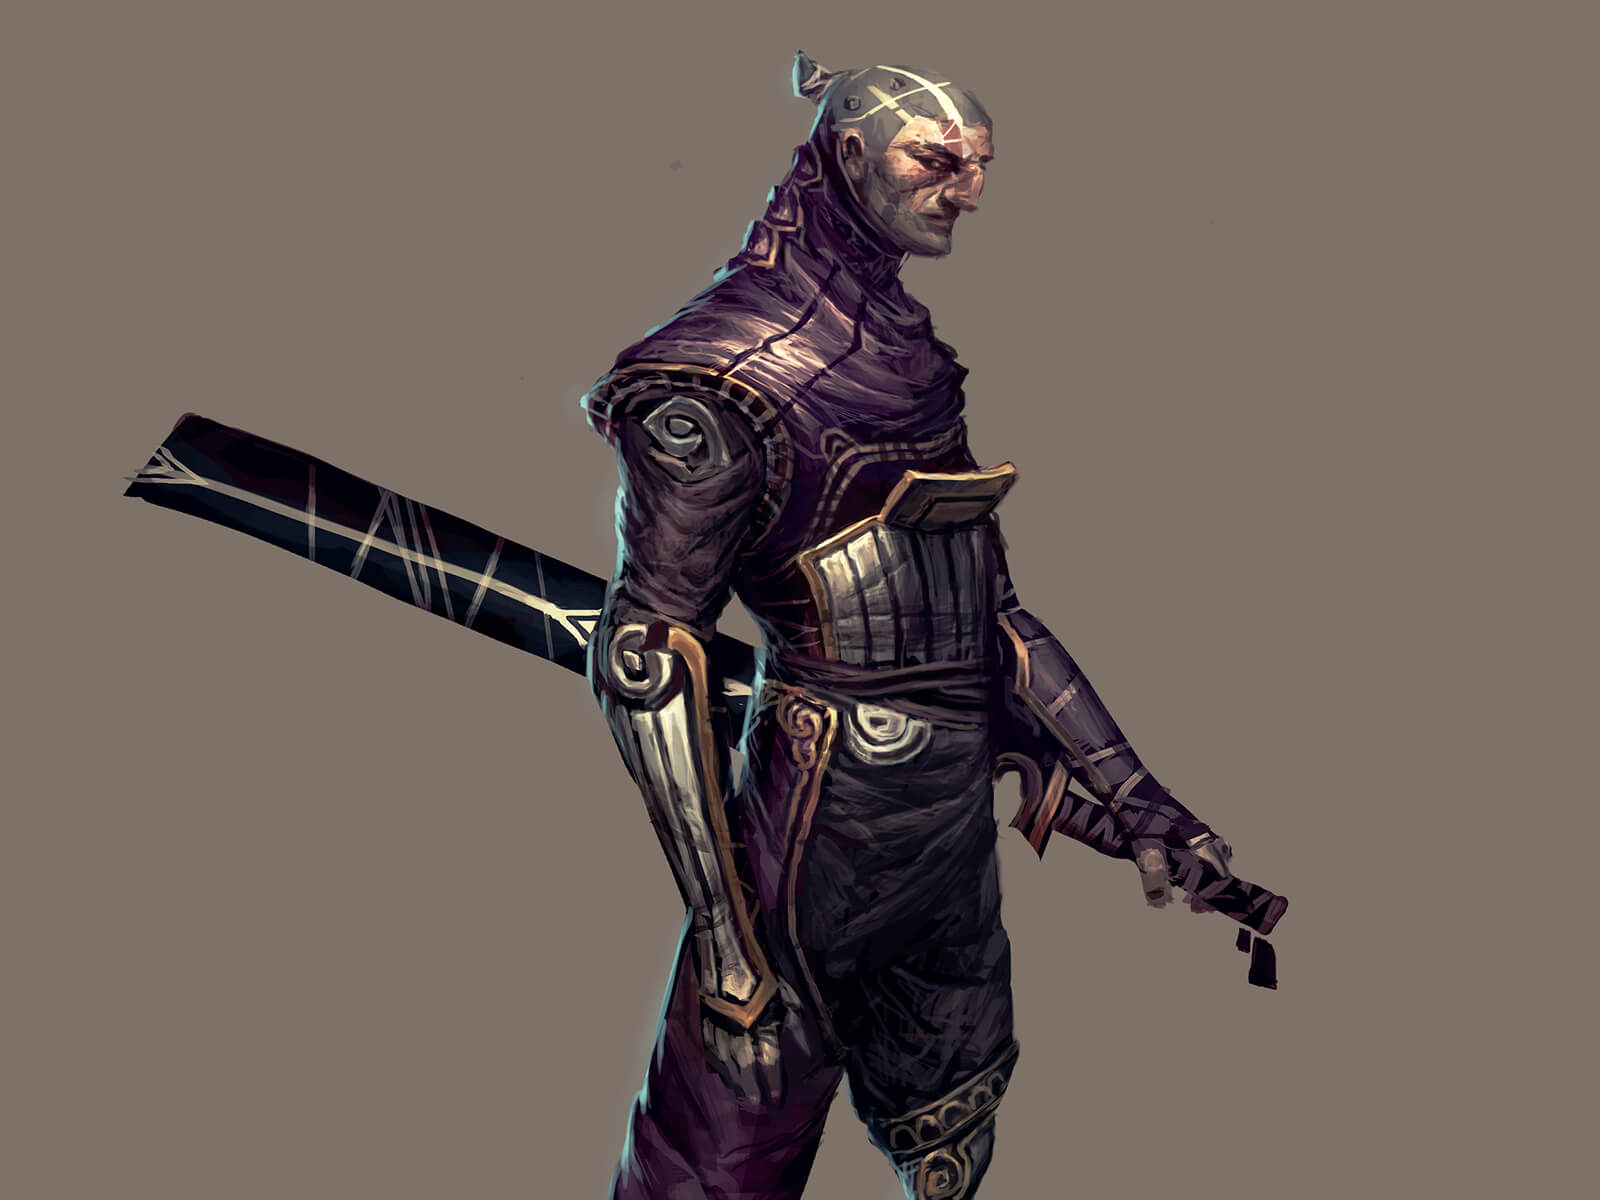 Un guerrero con un ornamentado uniforme púrpura y plateado visto de lado con una espada envainada en la cadera.